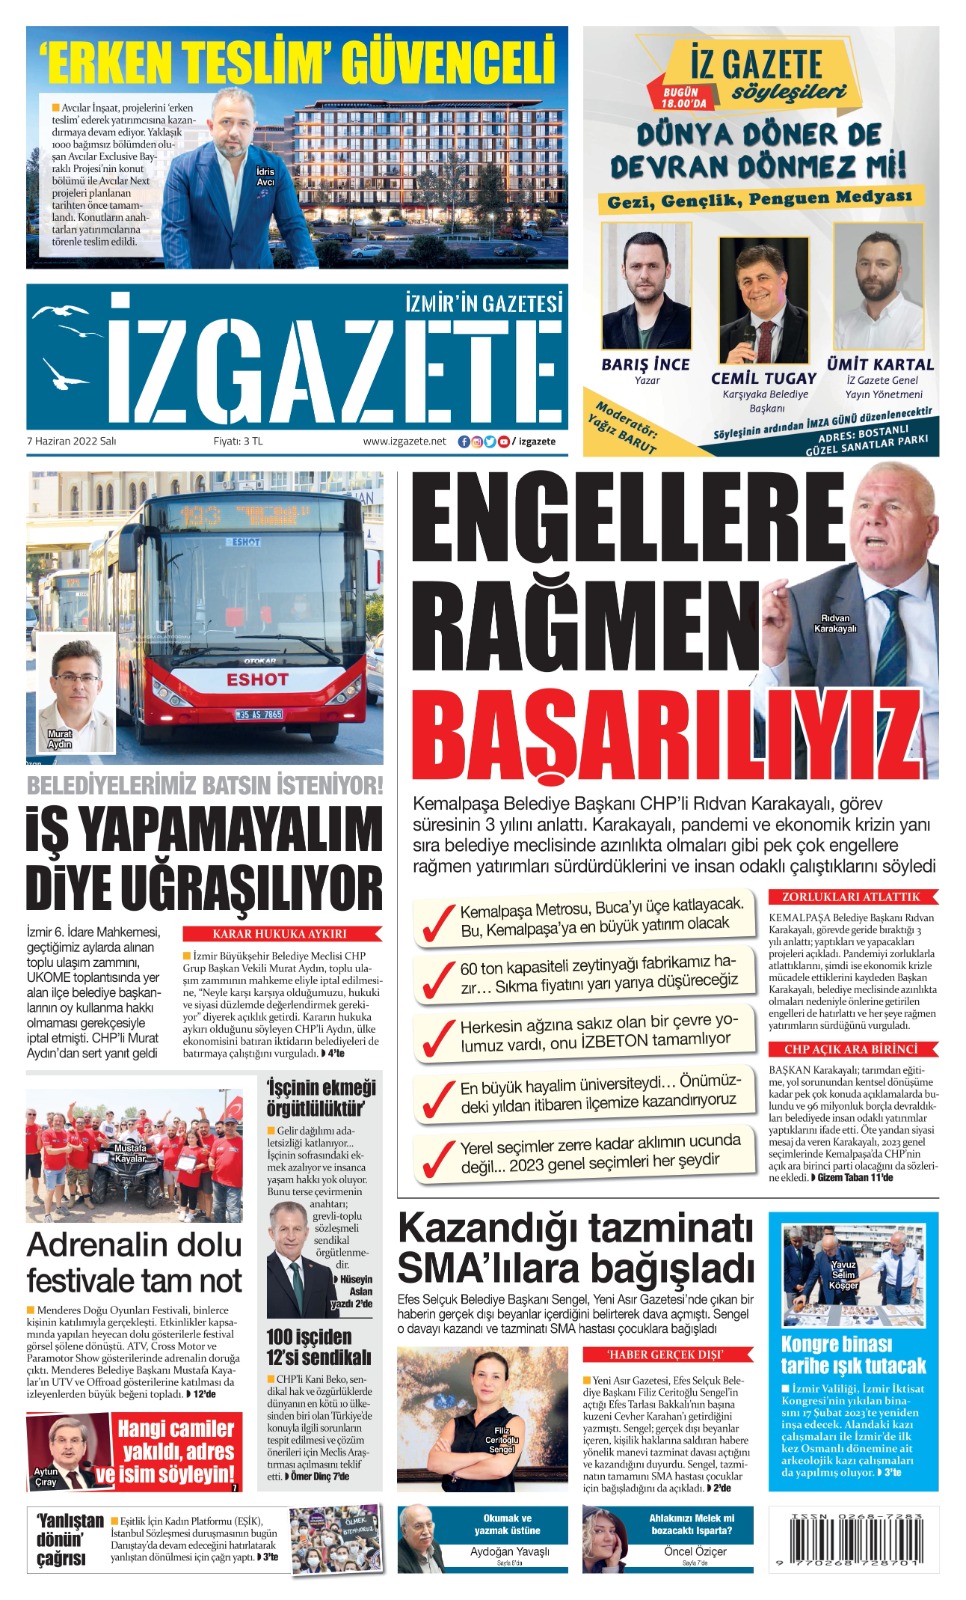 İz Gazete - İzmir'in Gazetesi - 07.06.2022 Manşeti